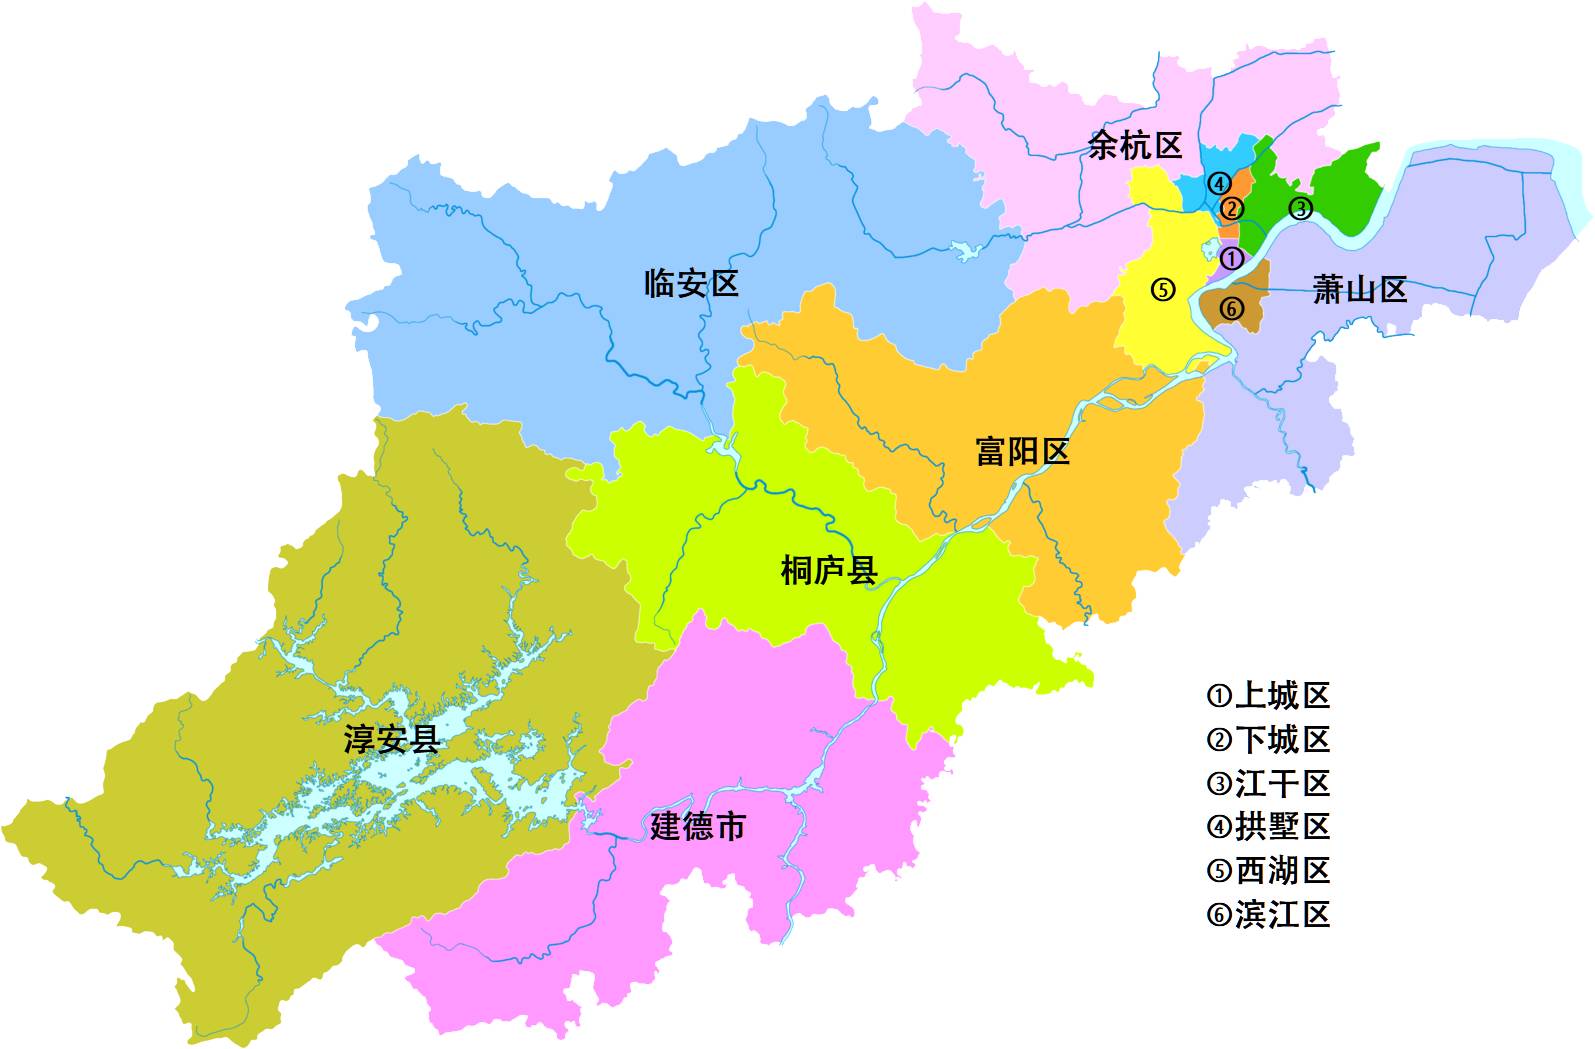 浙江萧山地图位置图片